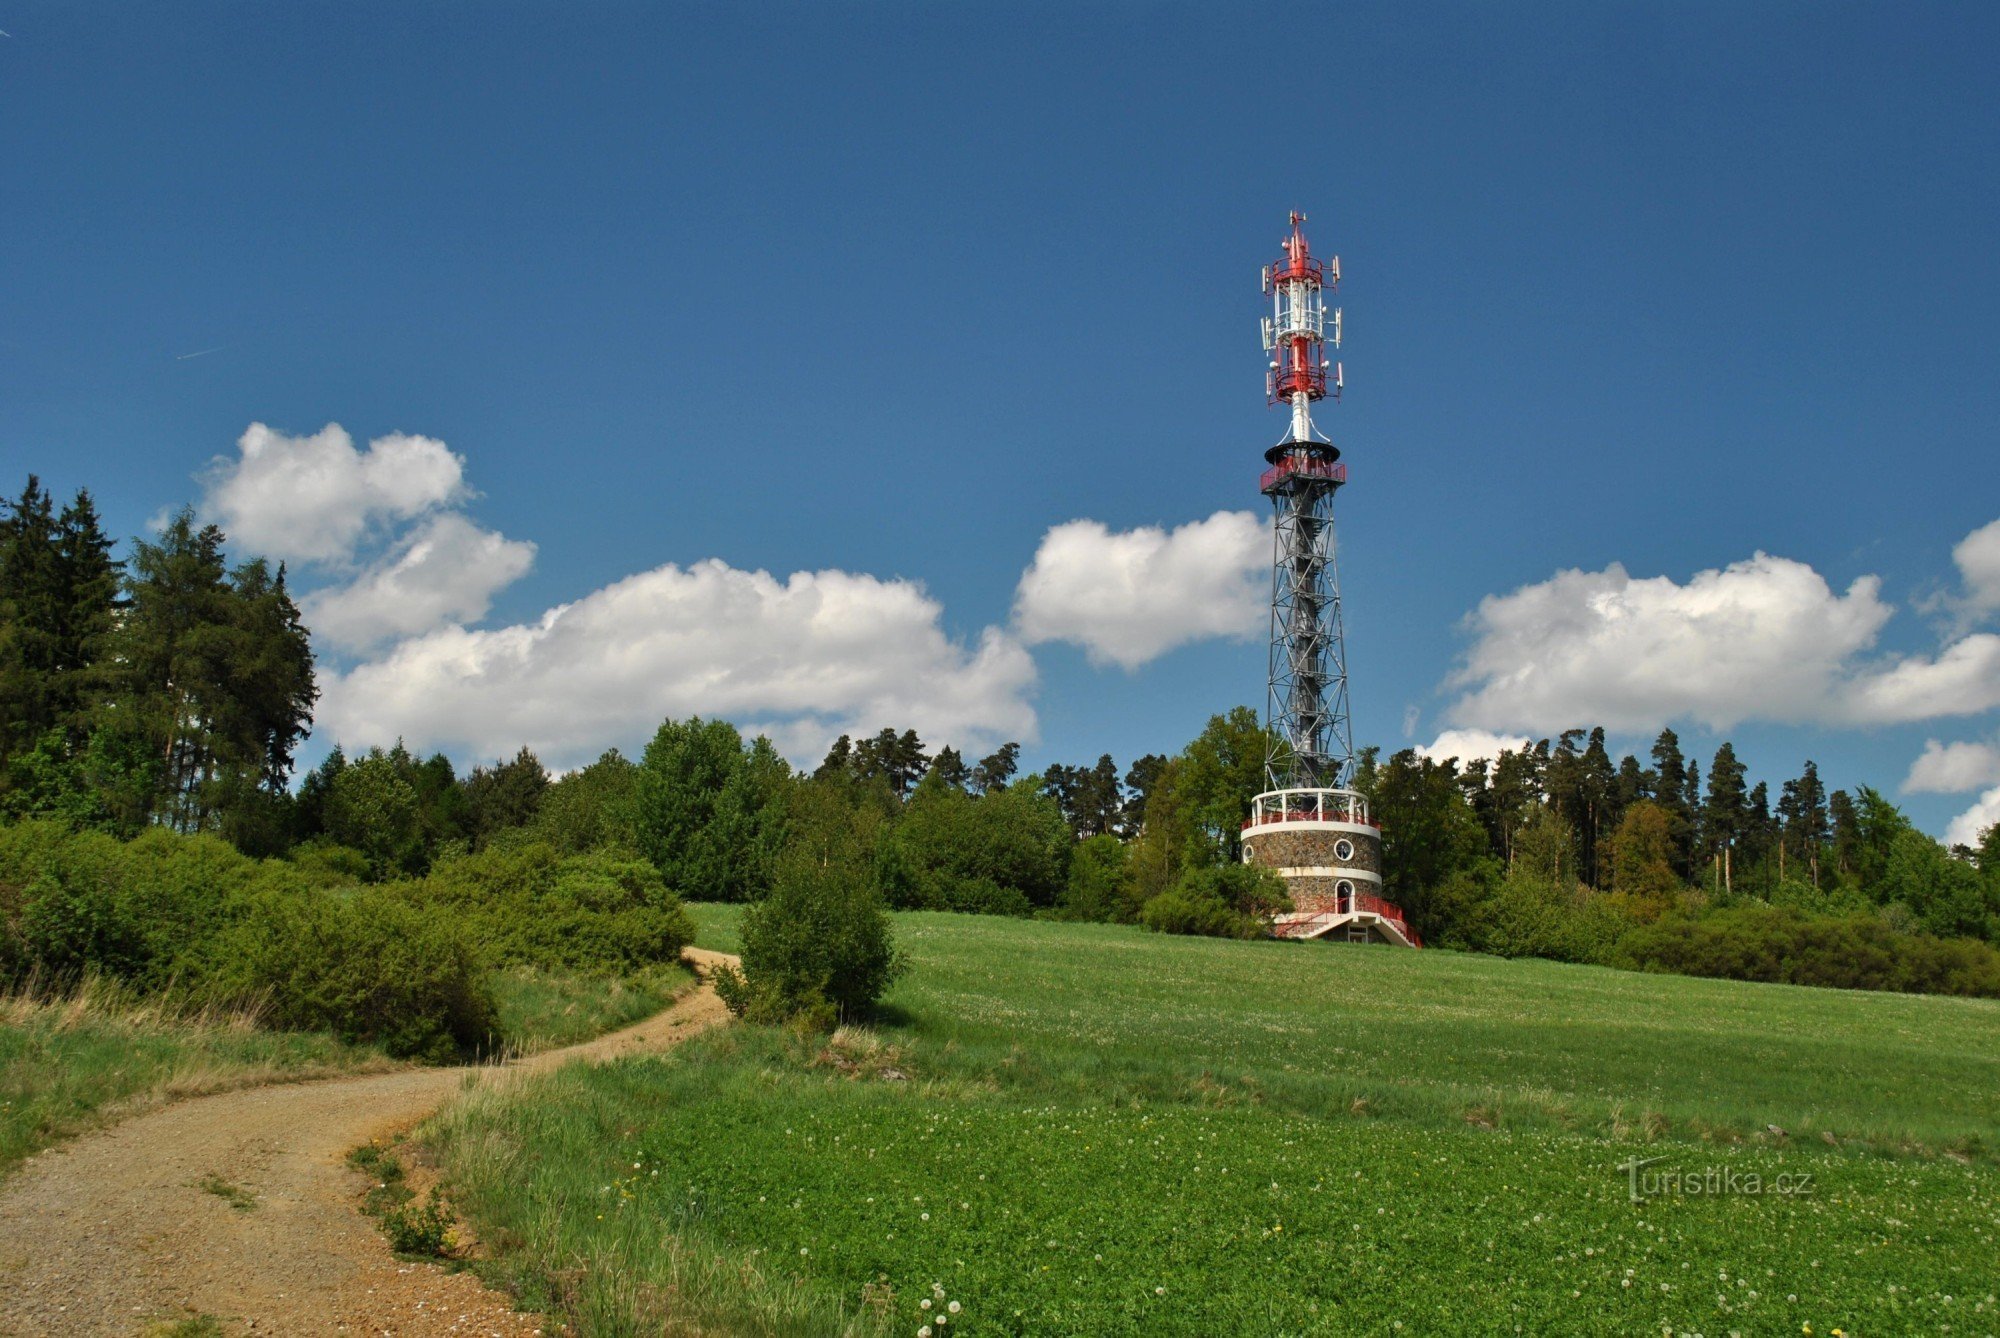 Kuníček uitkijktoren bij Petrovice